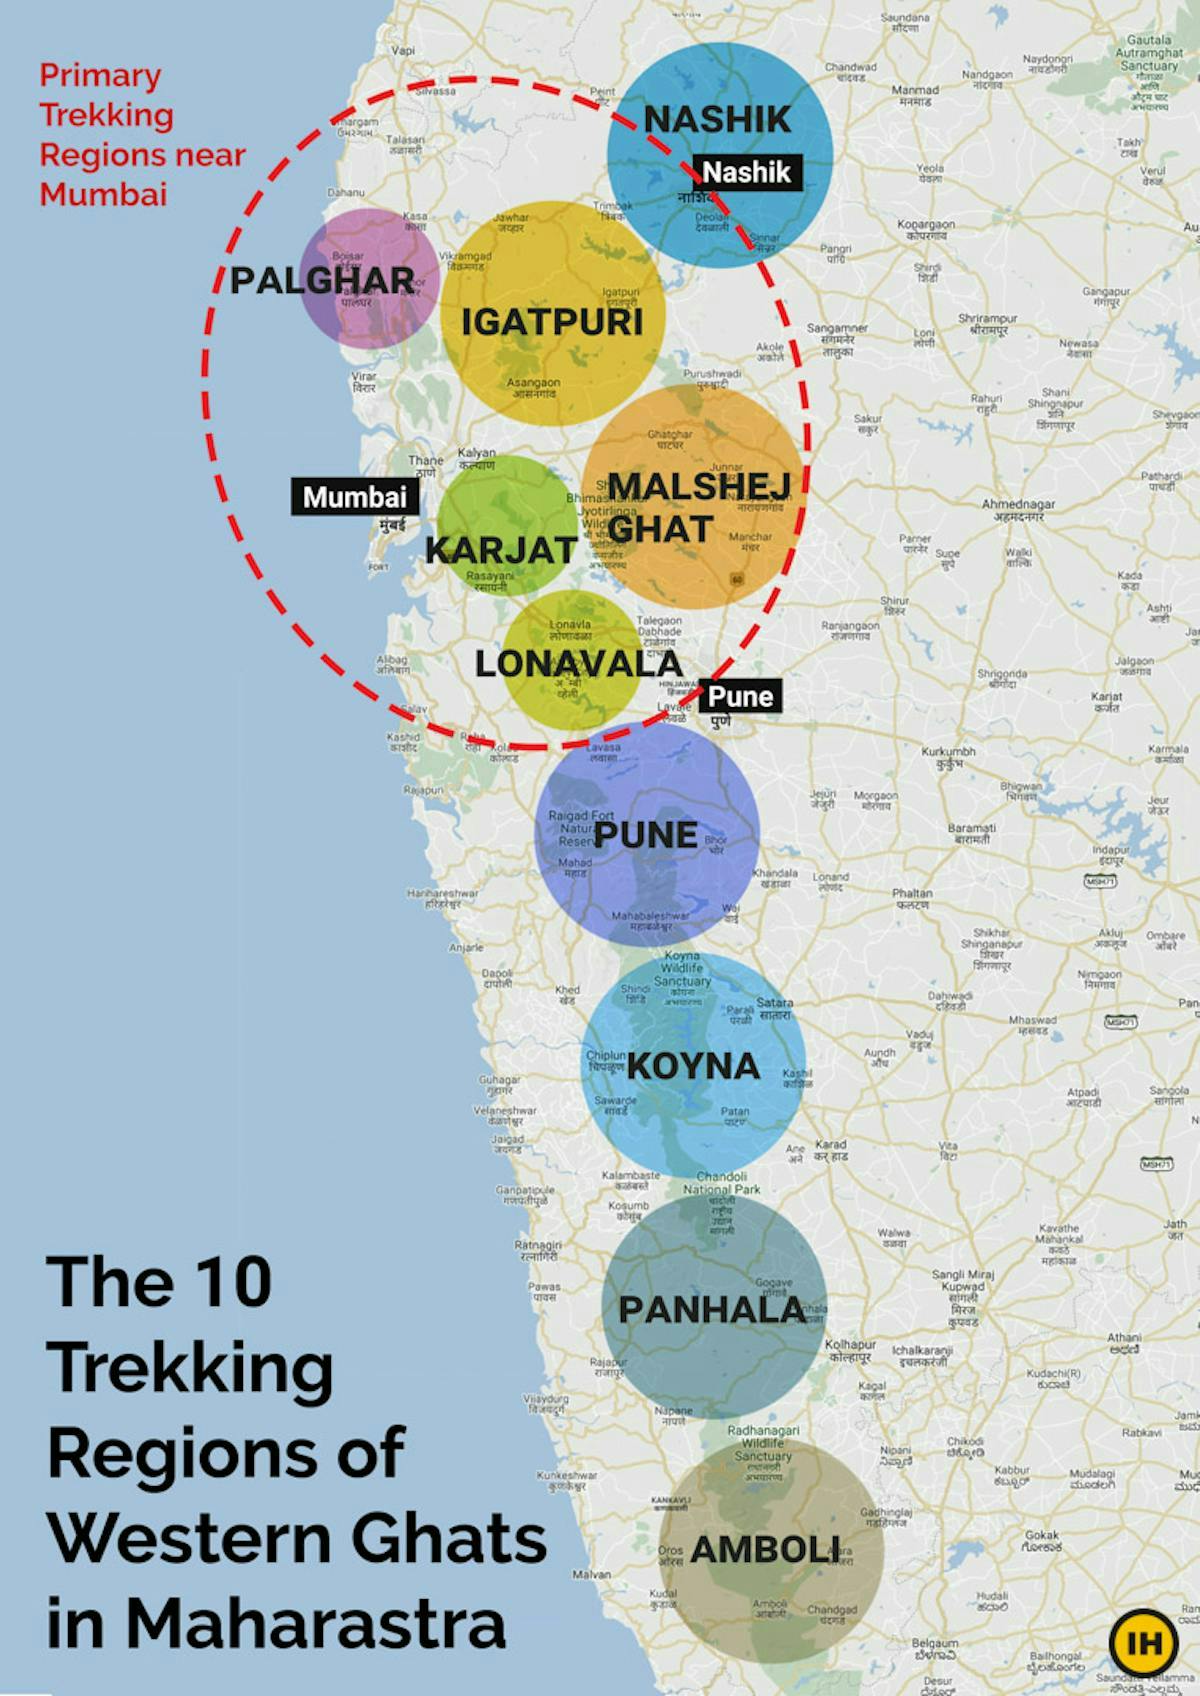 Trekking regions in Maharashtra, Trekking near Mumbai, Infographic